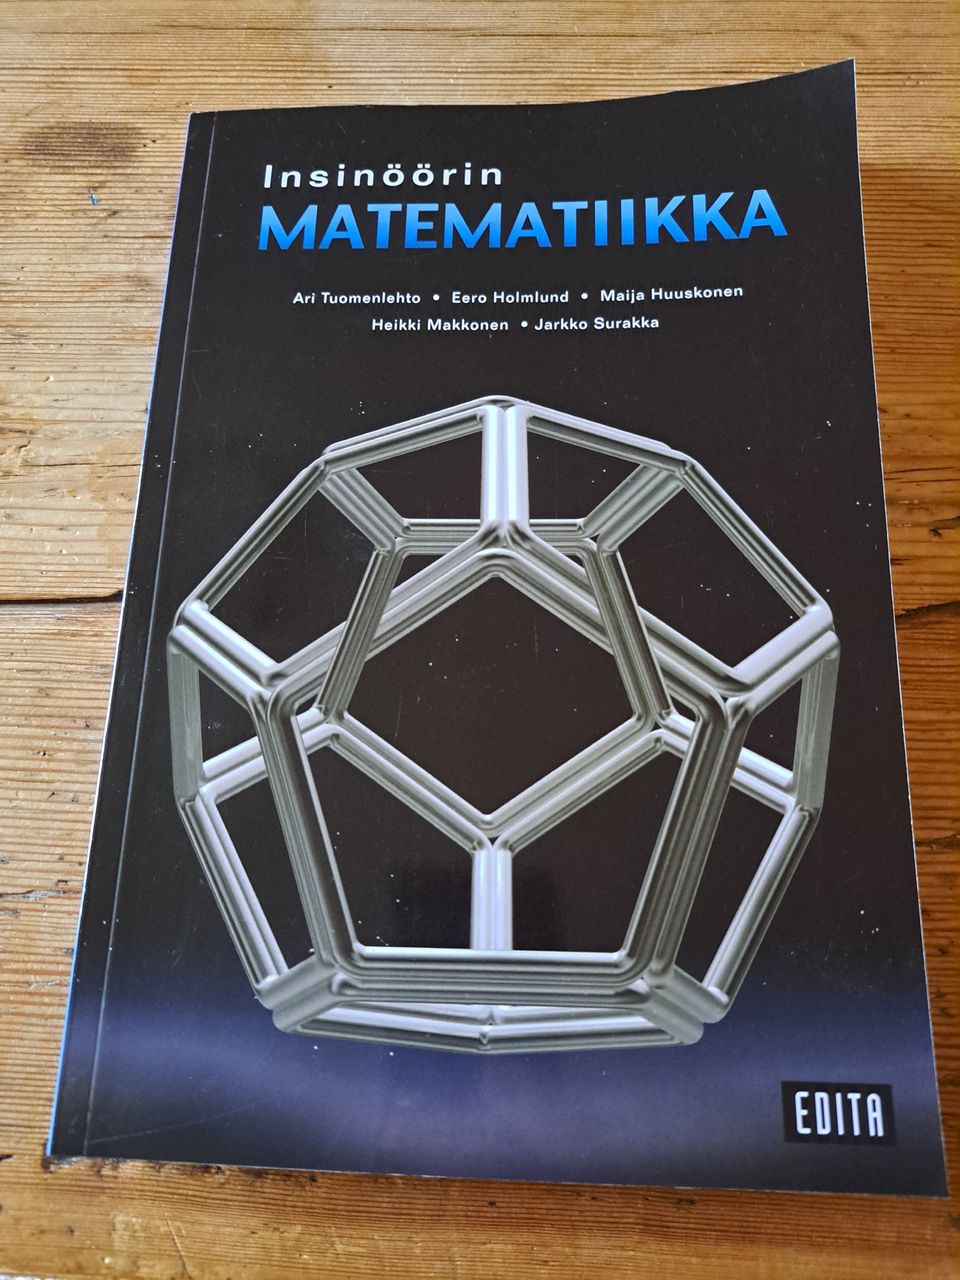 Insinöörin matematiikka / Tekniikan taulukkokirja